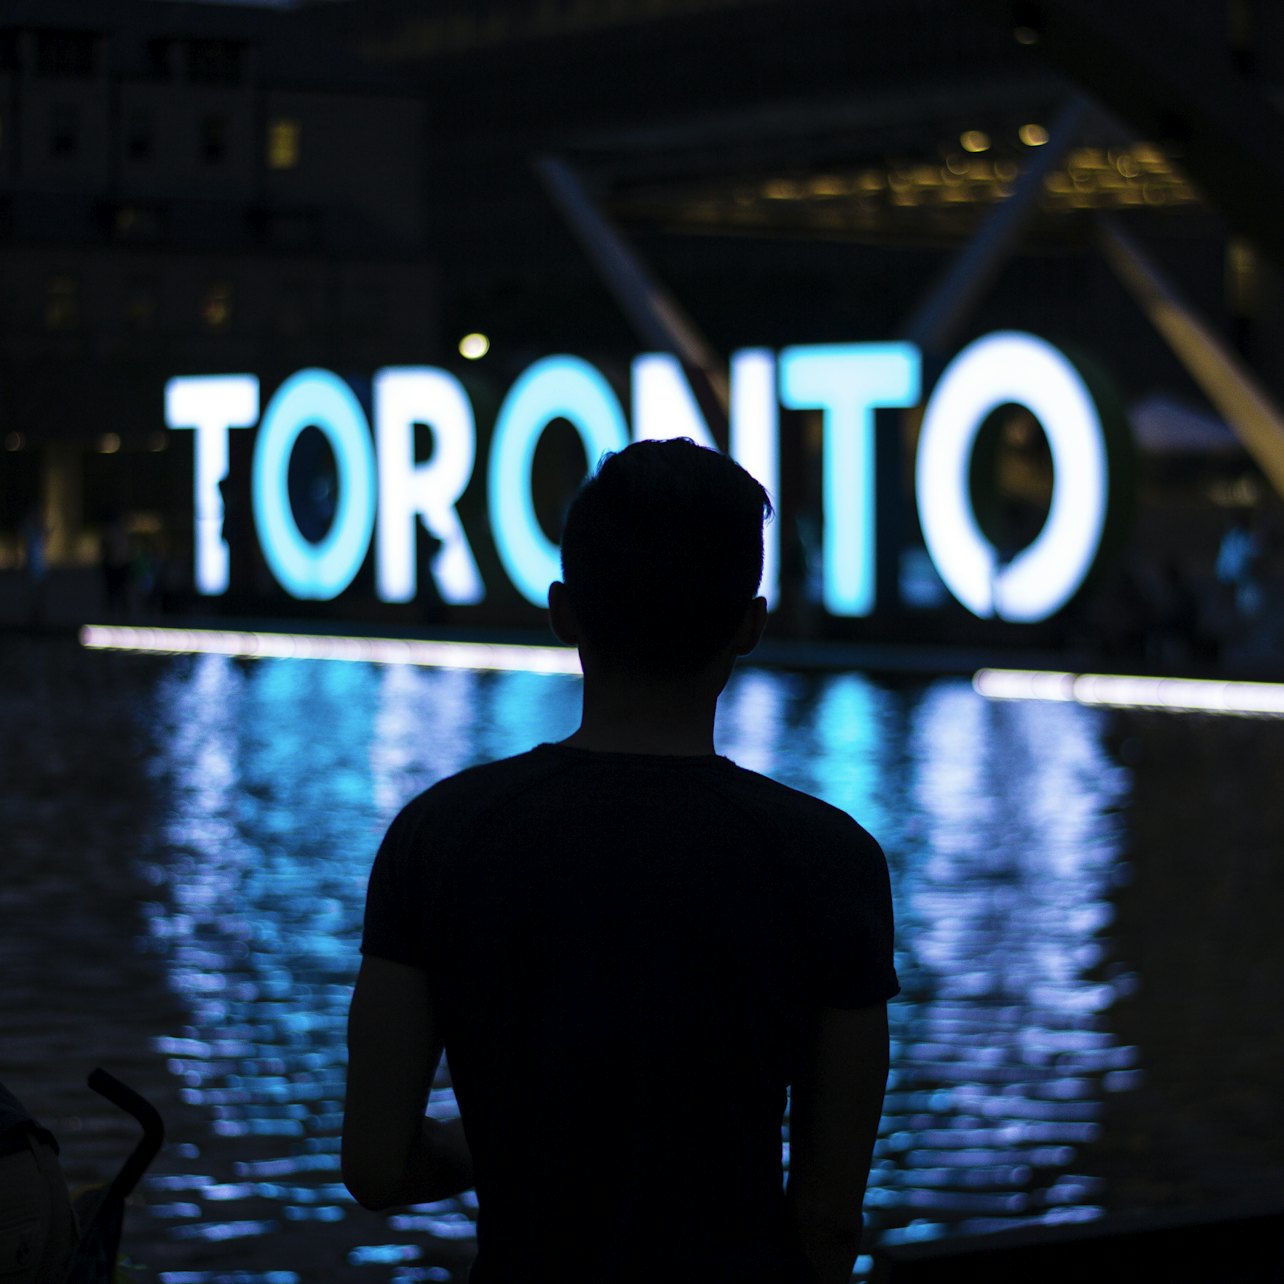 Tour Serale Toronto Panoramica con Accesso alla CN Tower - Alloggi in Toronto